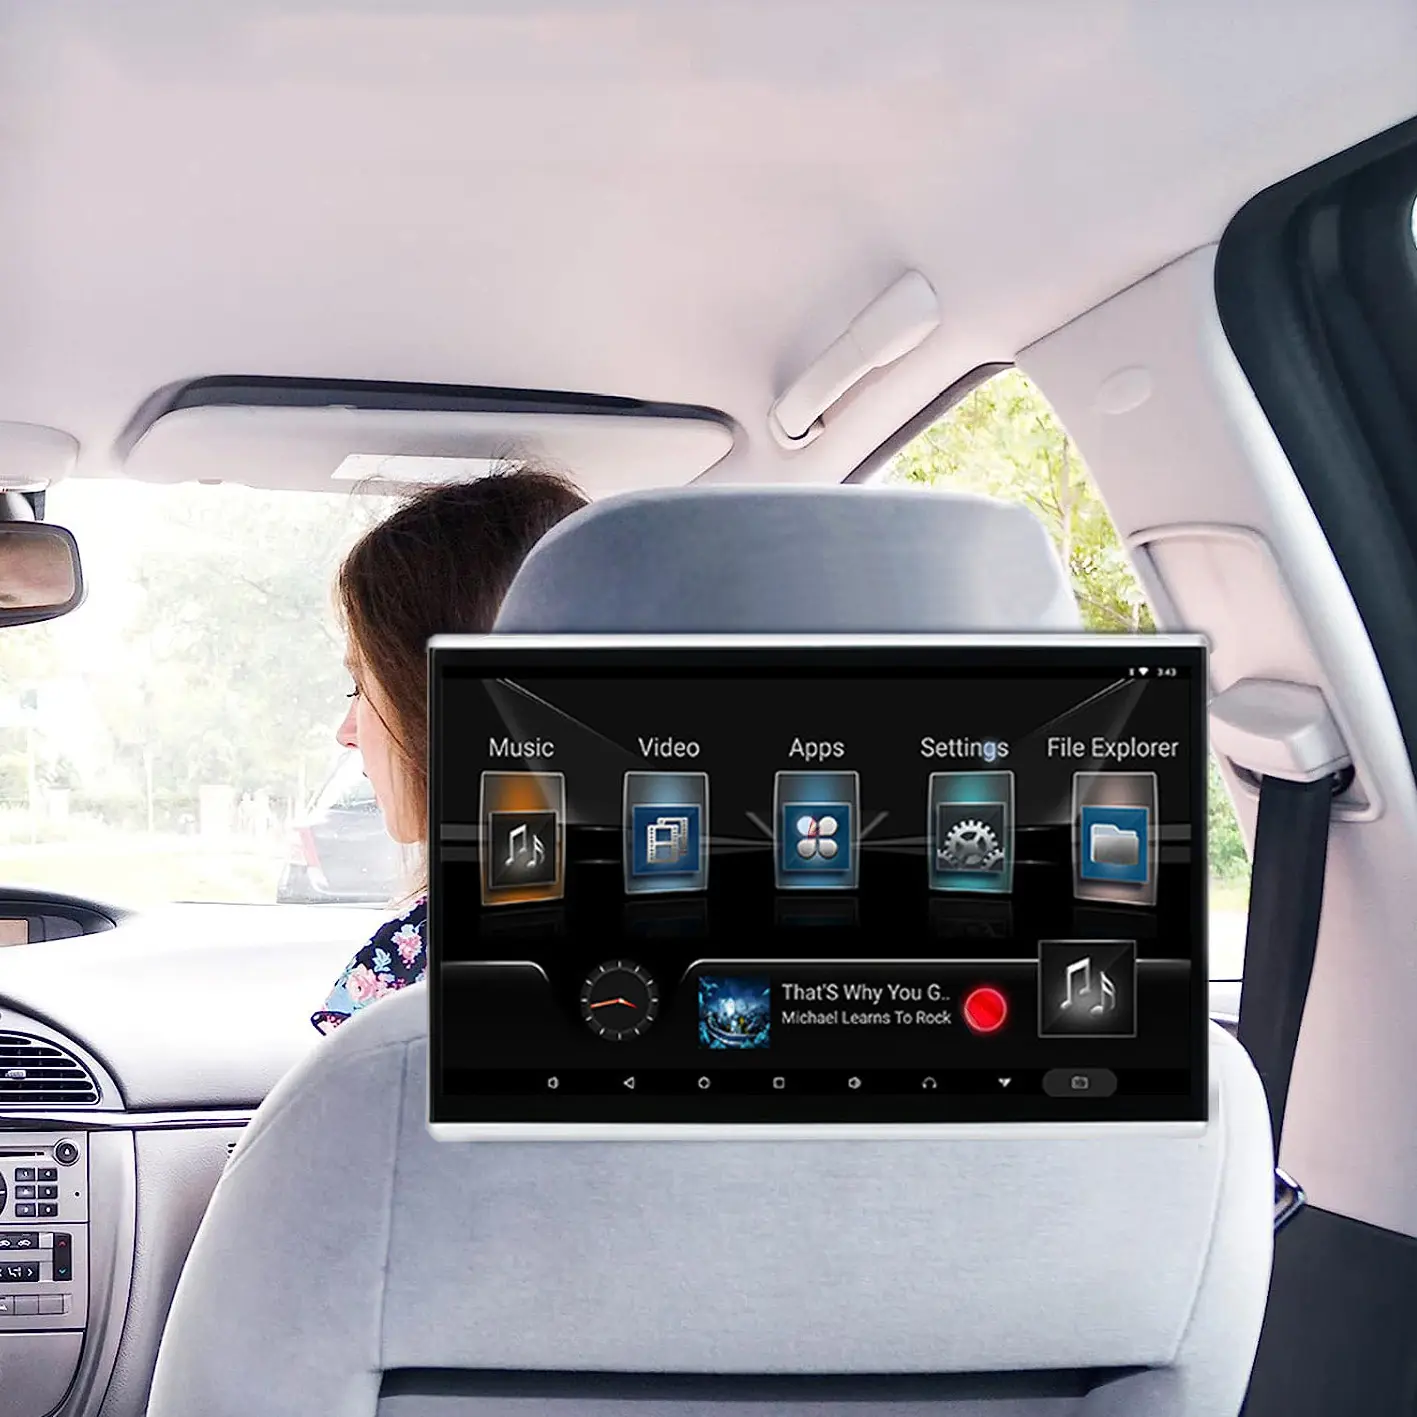 Vendita calda Monitor poggiatesta auto Android Smart universale Touch Screen lettore Dvd sistema di intrattenimento posteriore per auto lettore